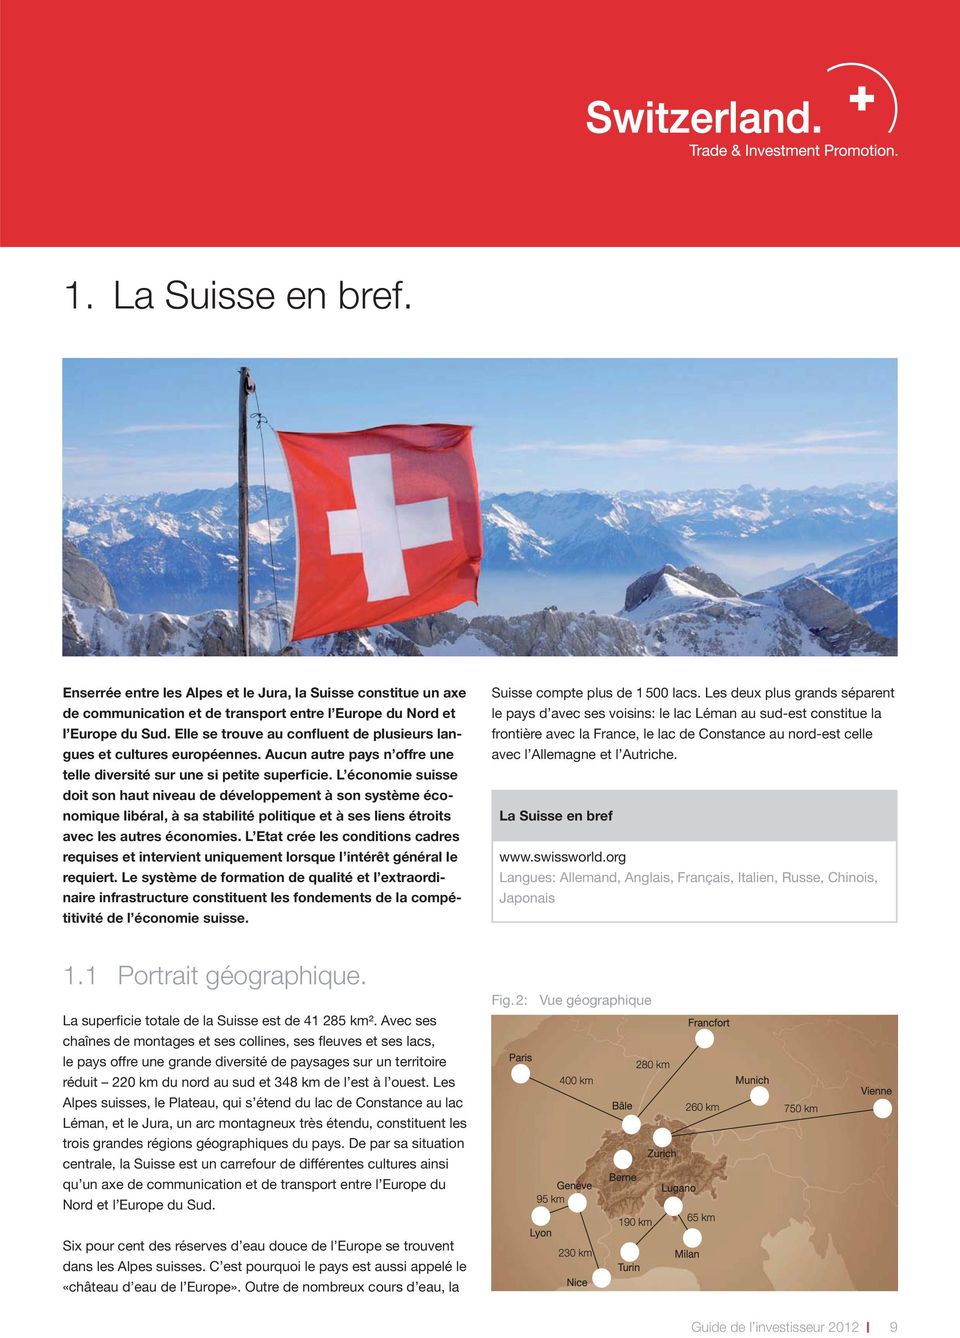 L économie suisse doit son haut niveau de développement à son système économique libéral, à sa stabilité politique et à ses liens étroits avec les autres économies.